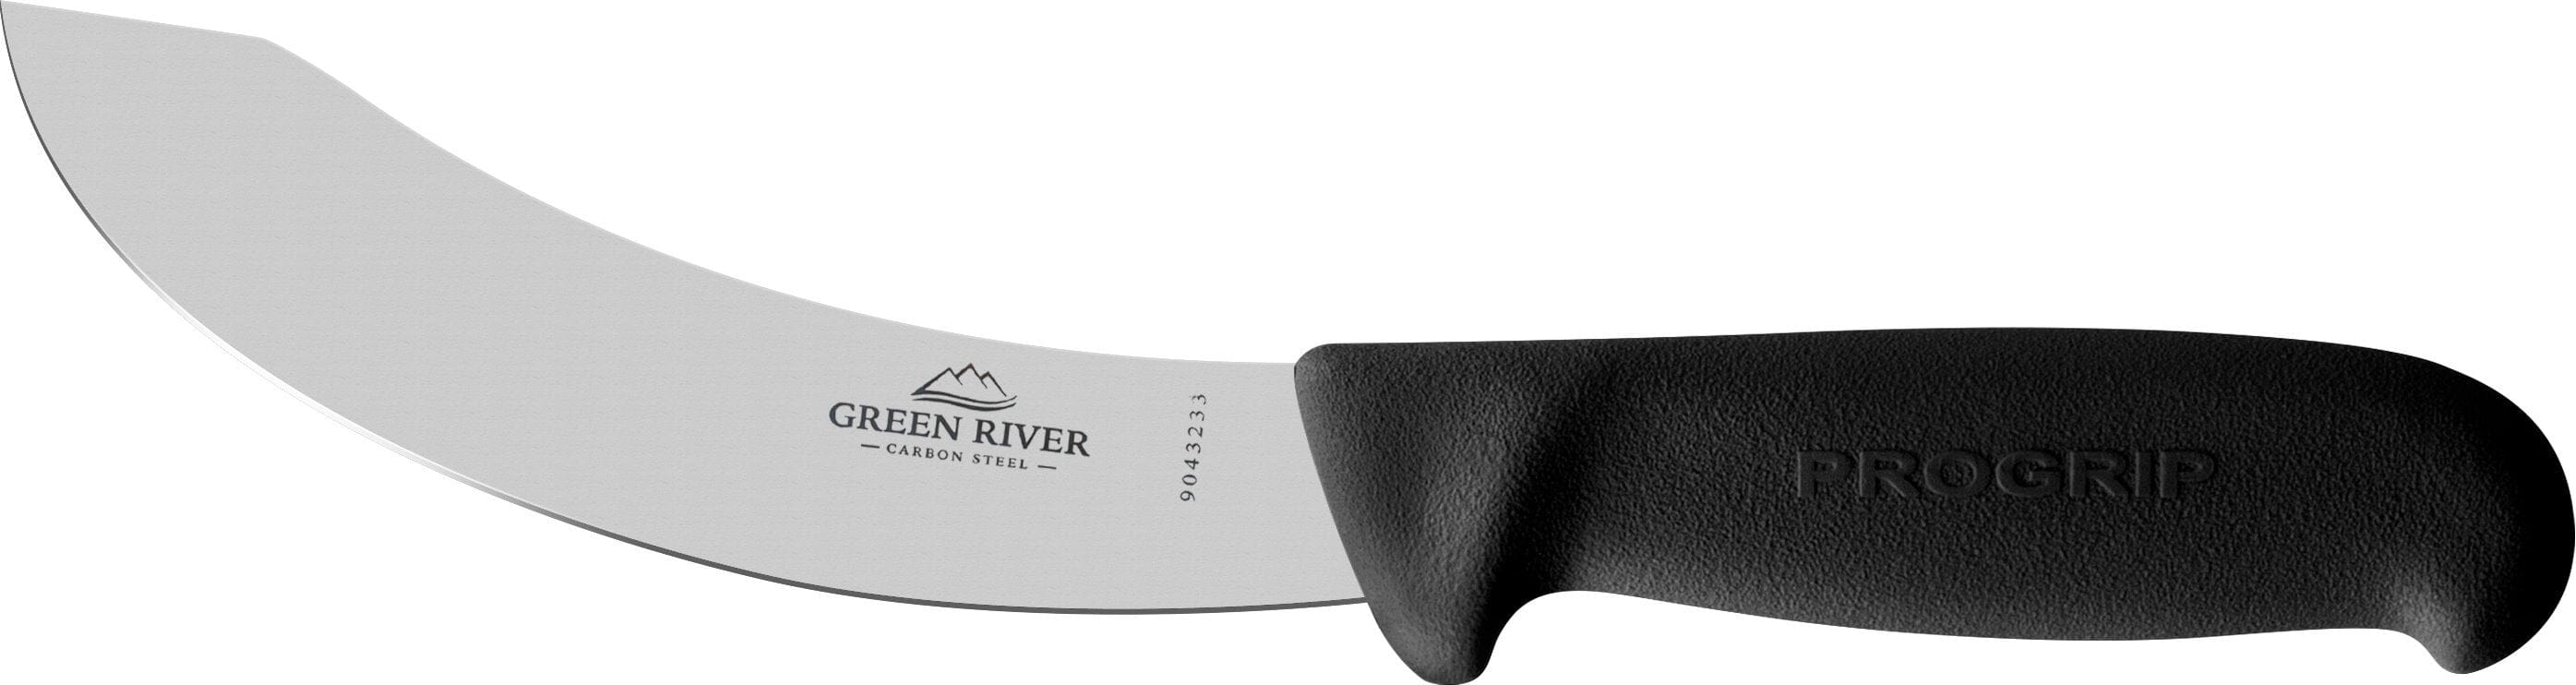 Green River Skinning Knife 14cm #100